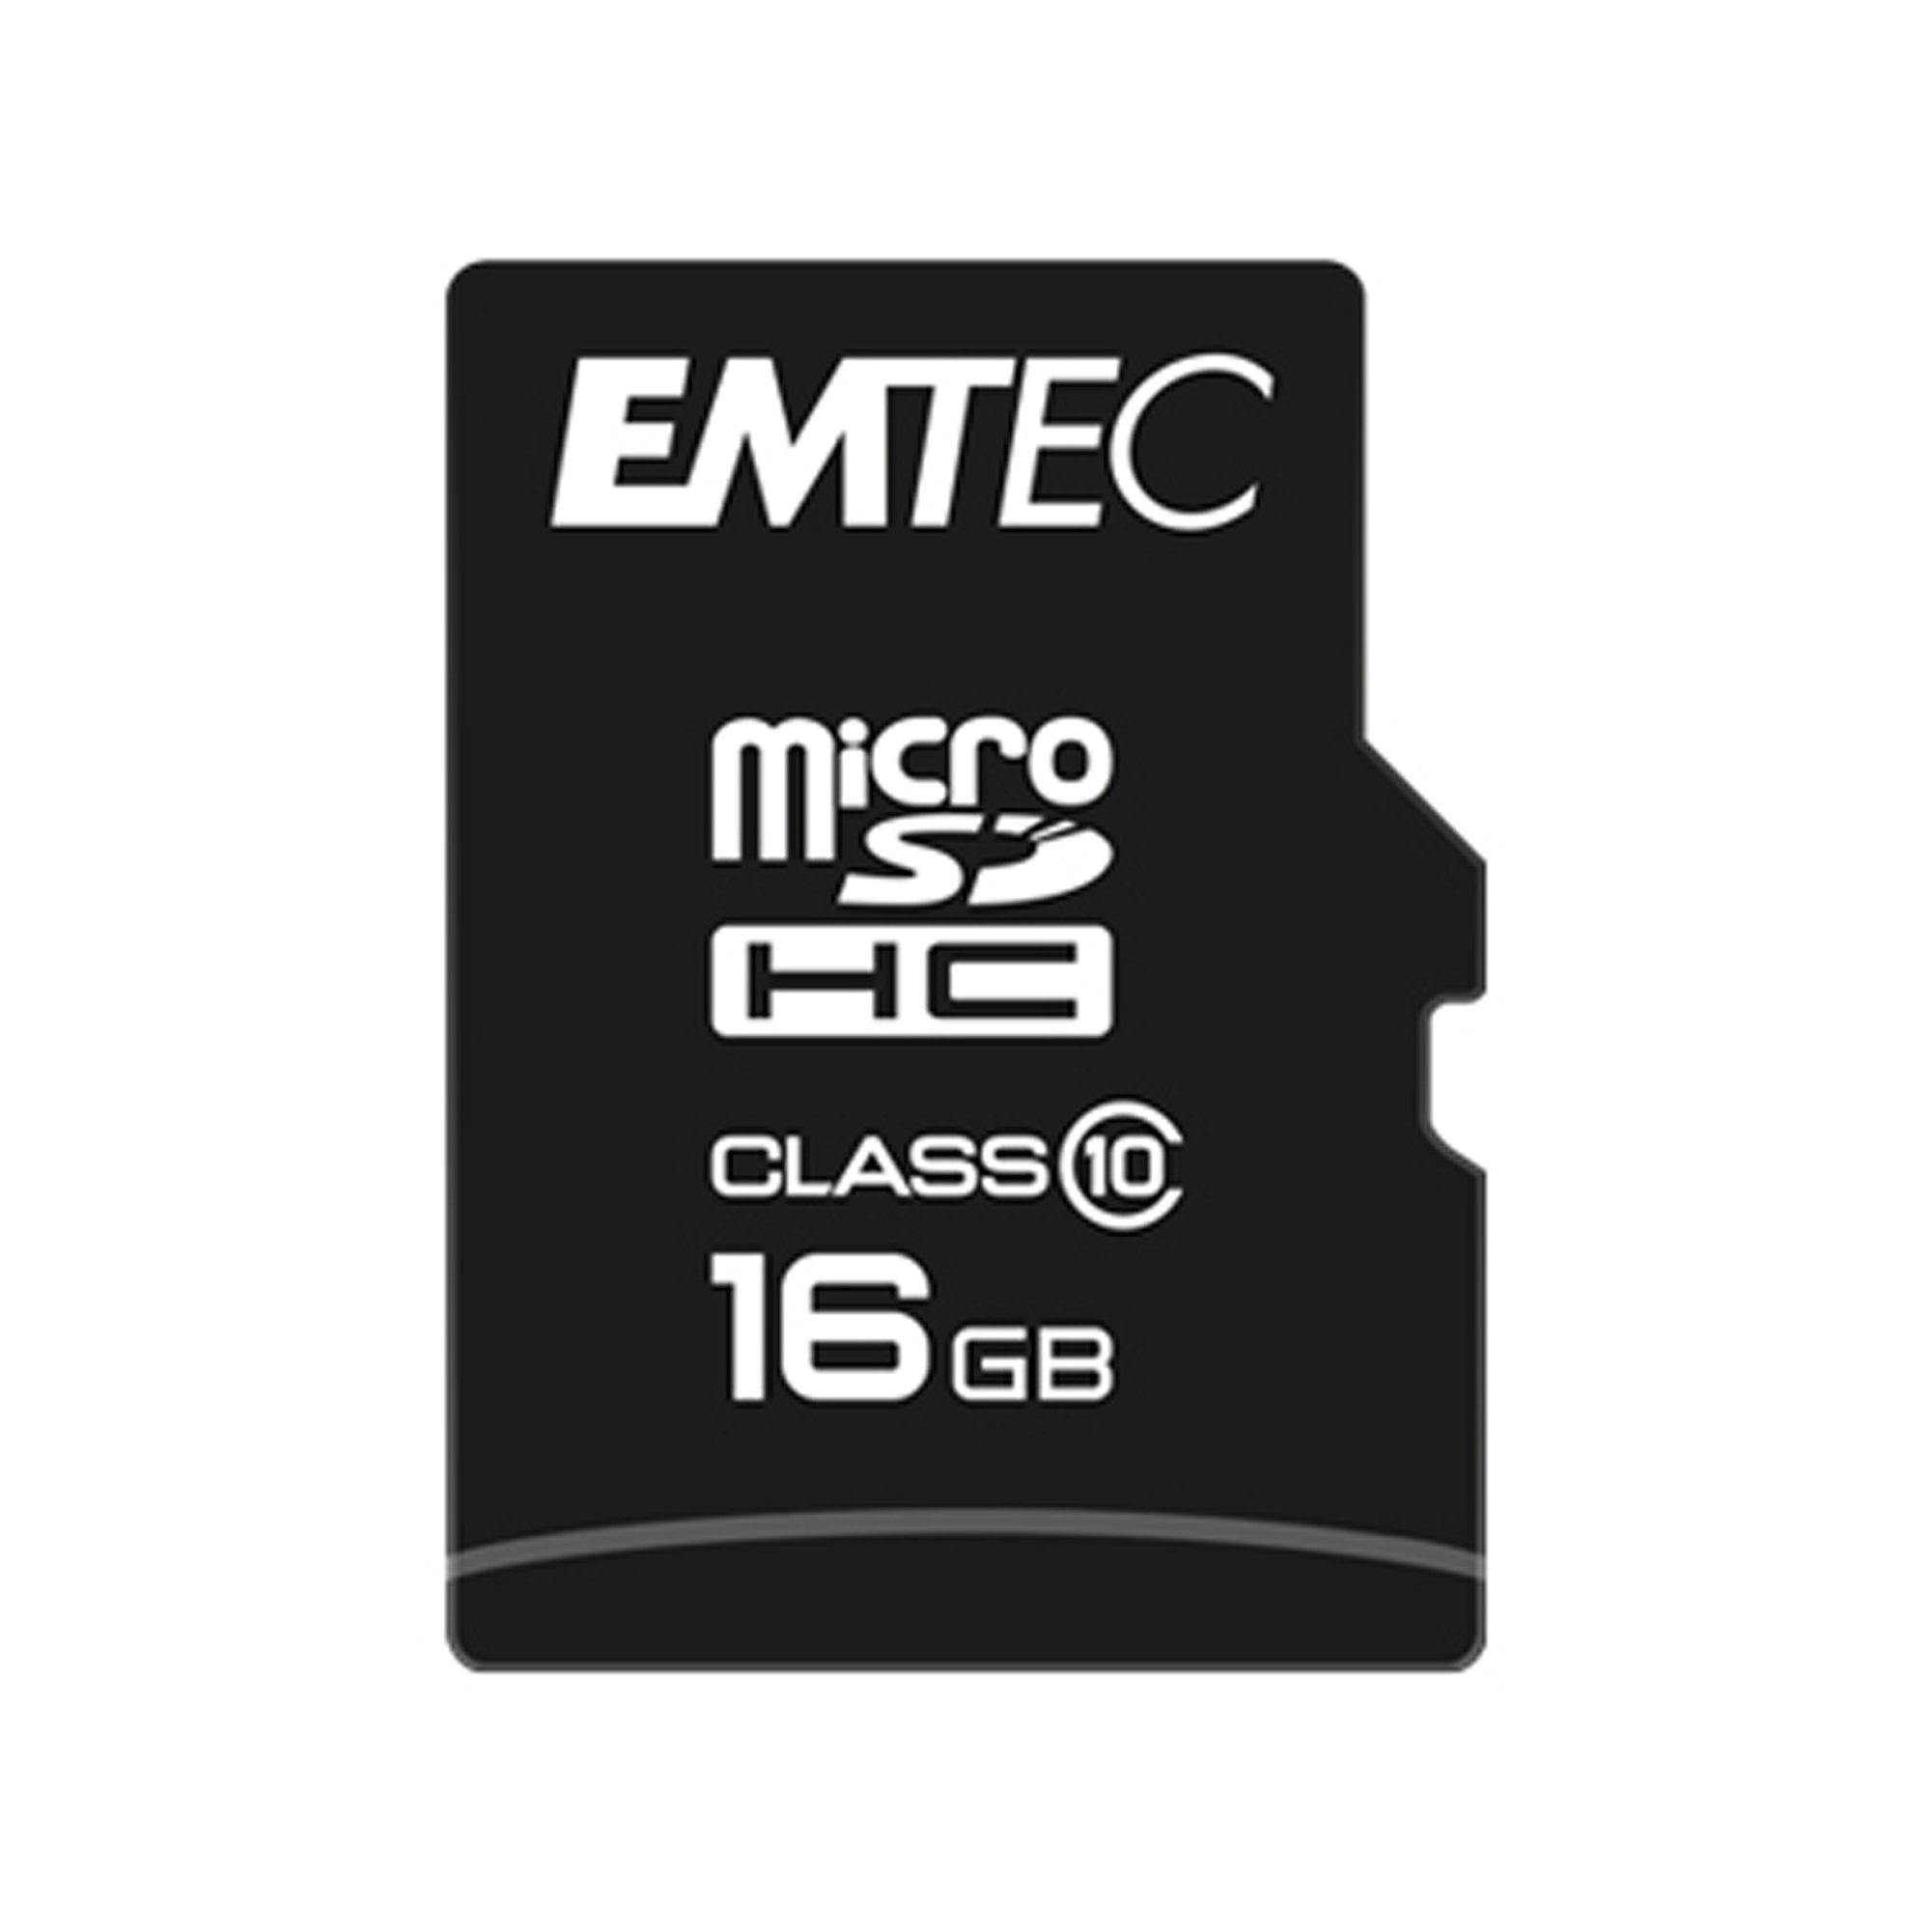 emtec-microsdhc-16gb-class10-classic